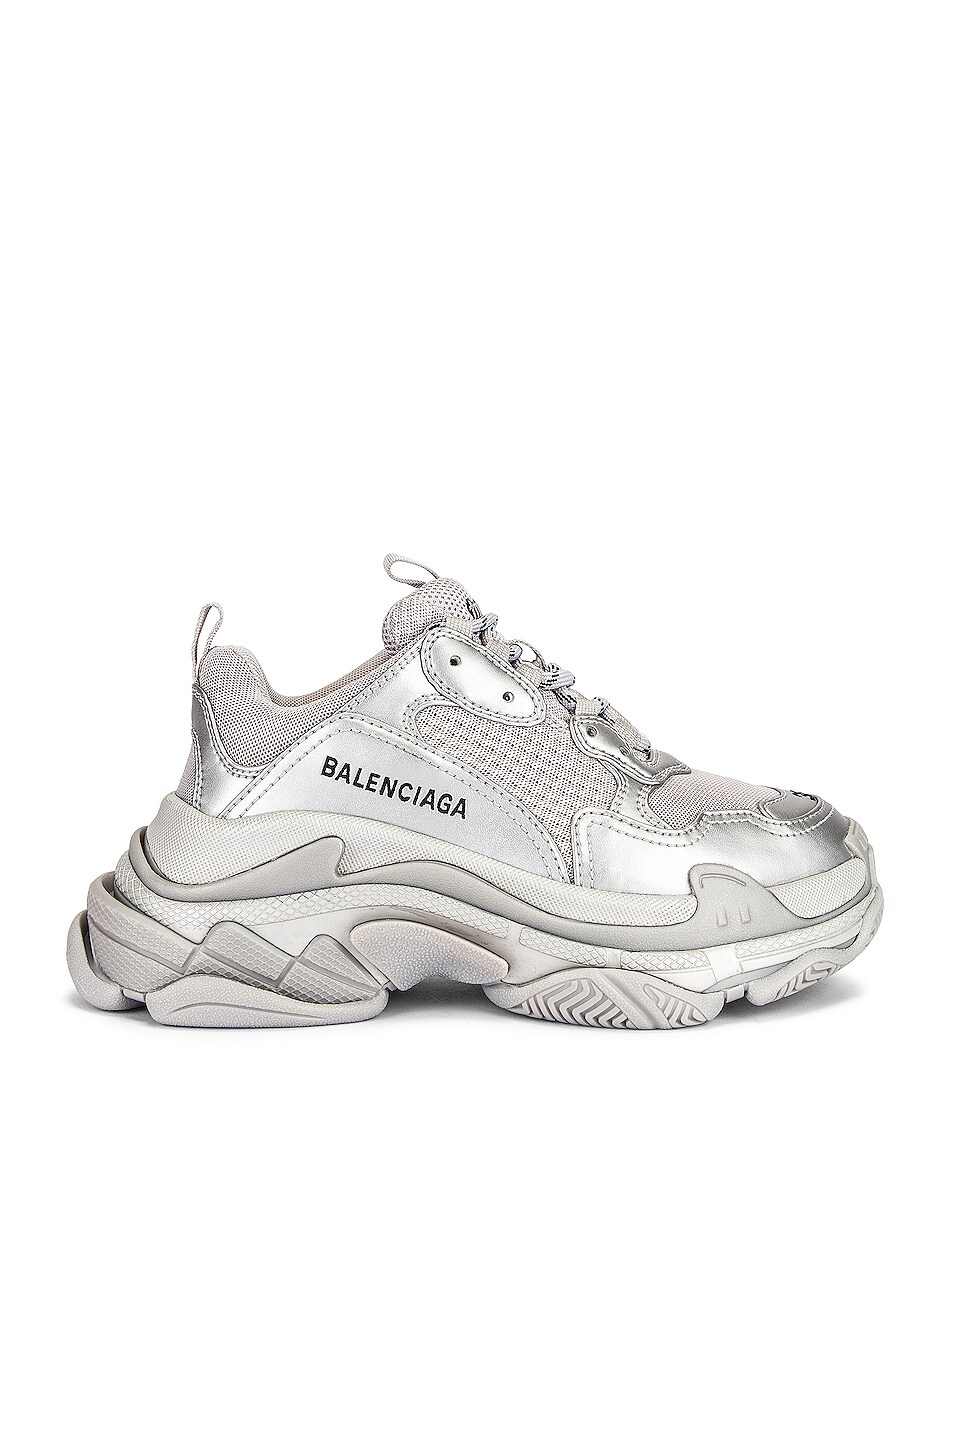 Image 1 of Balenciaga Triple S Sneakers in Silver Metallic